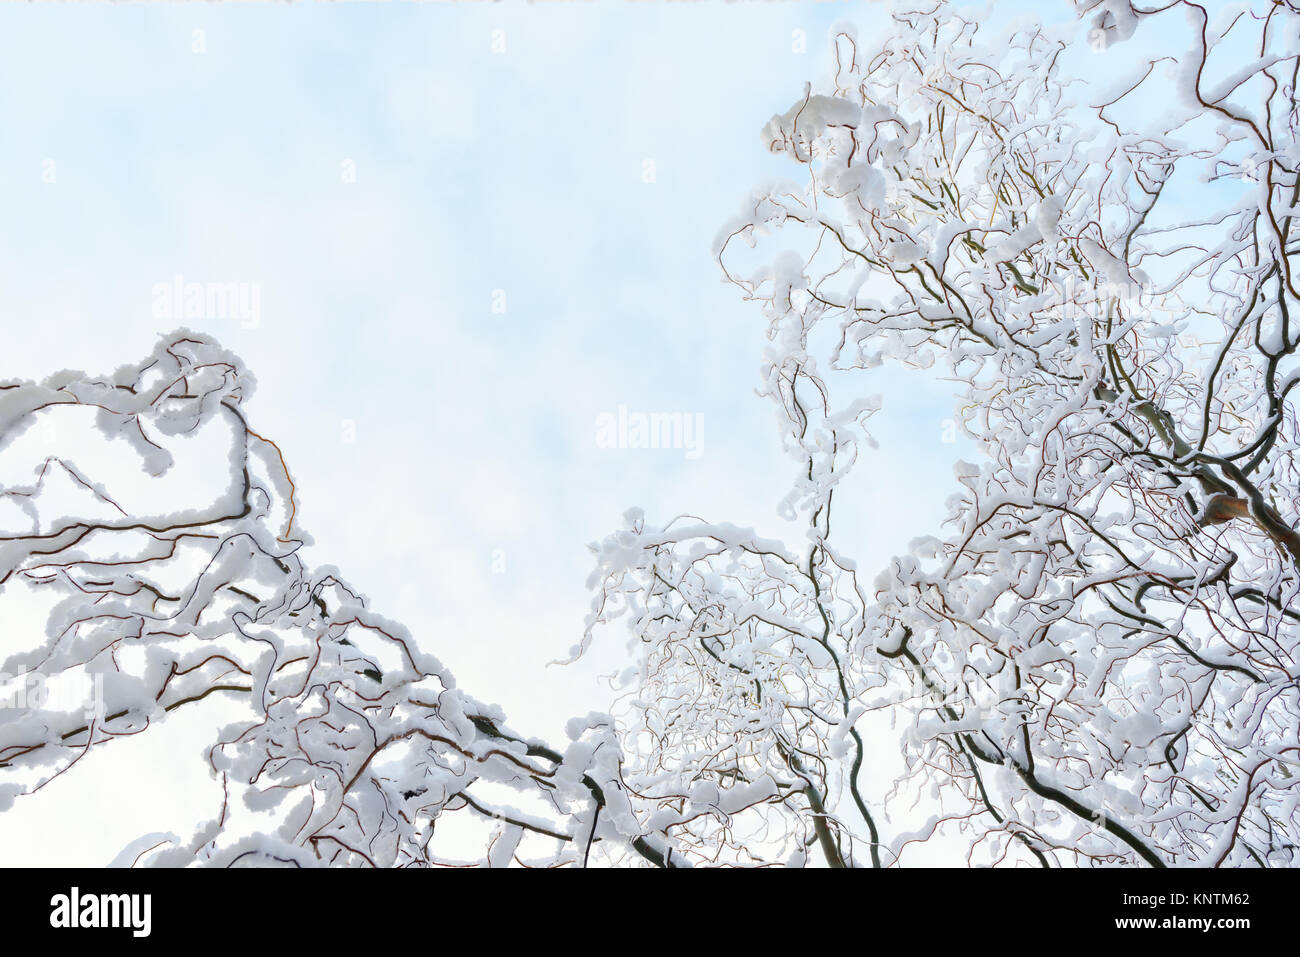 Bonito fondo de invierno con ramas nevadas Foto de stock